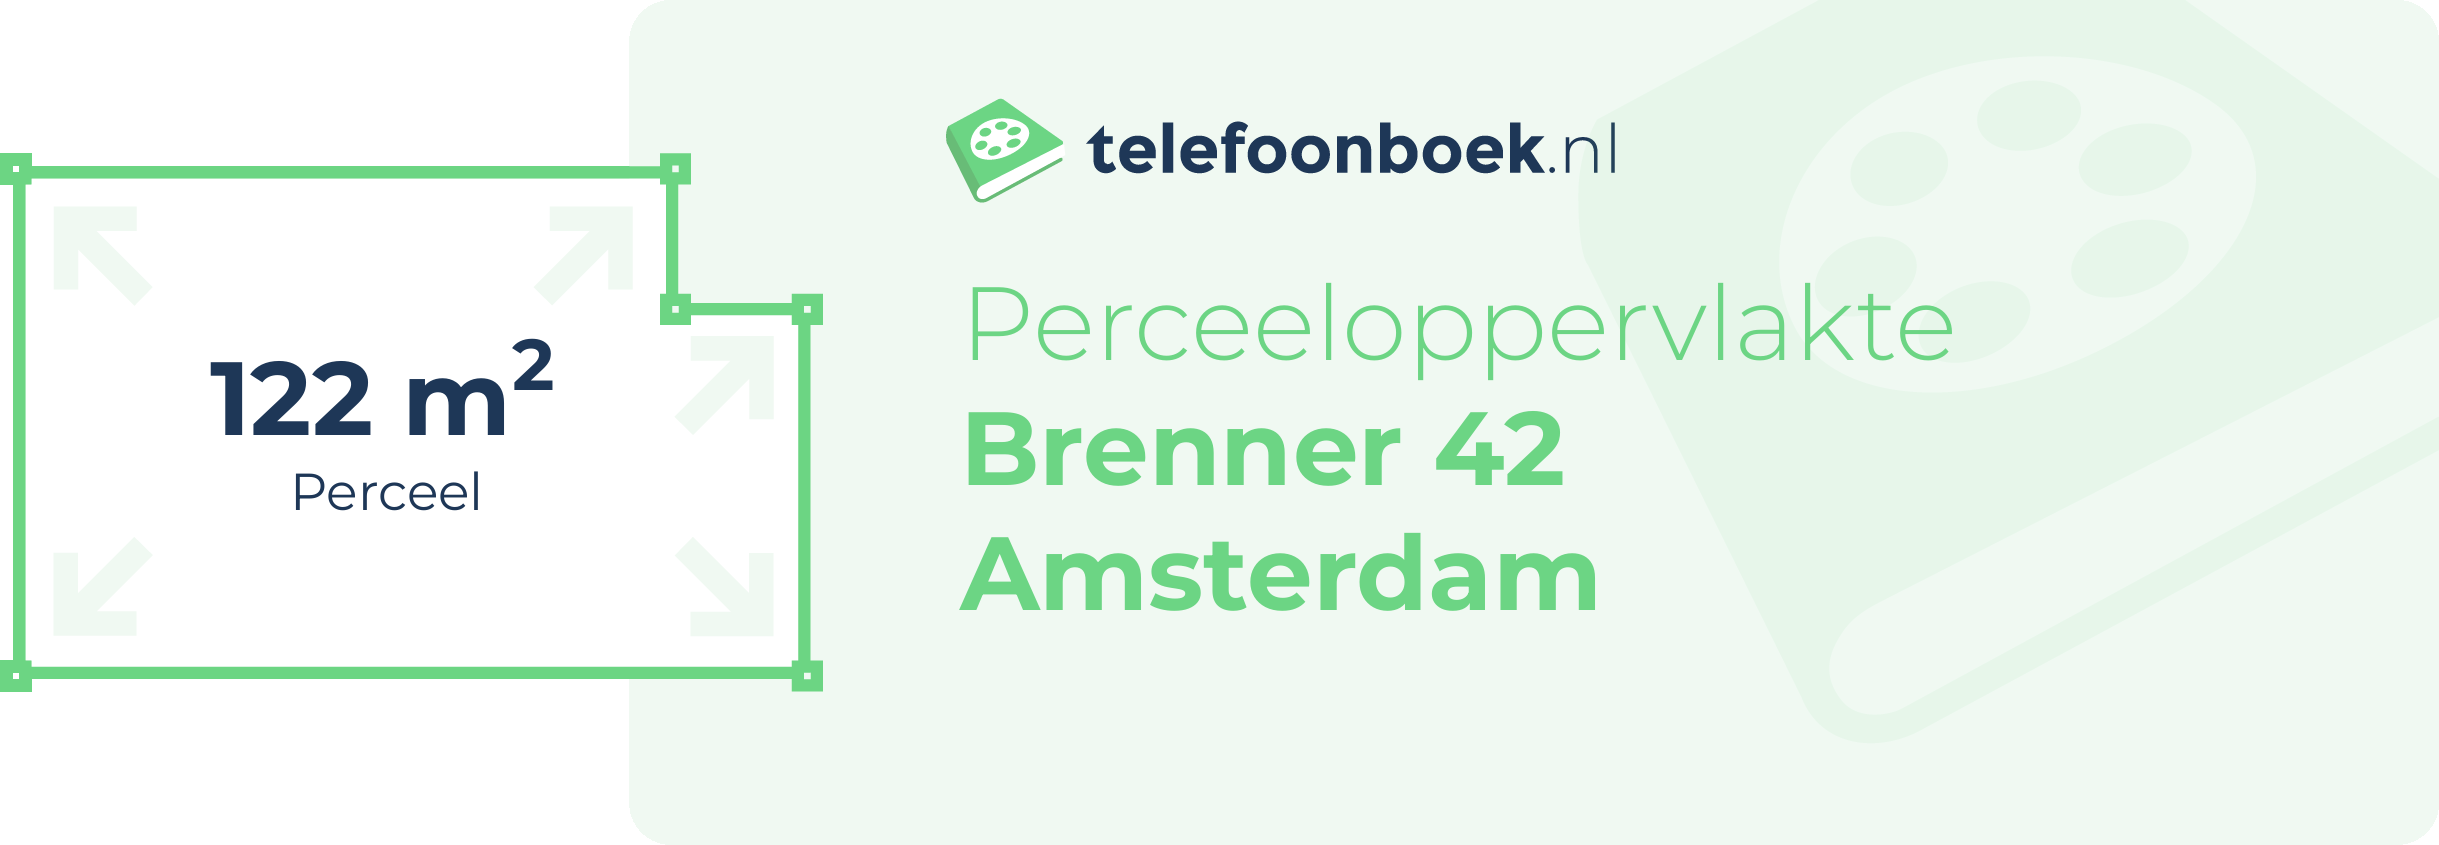 Perceeloppervlakte Brenner 42 Amsterdam